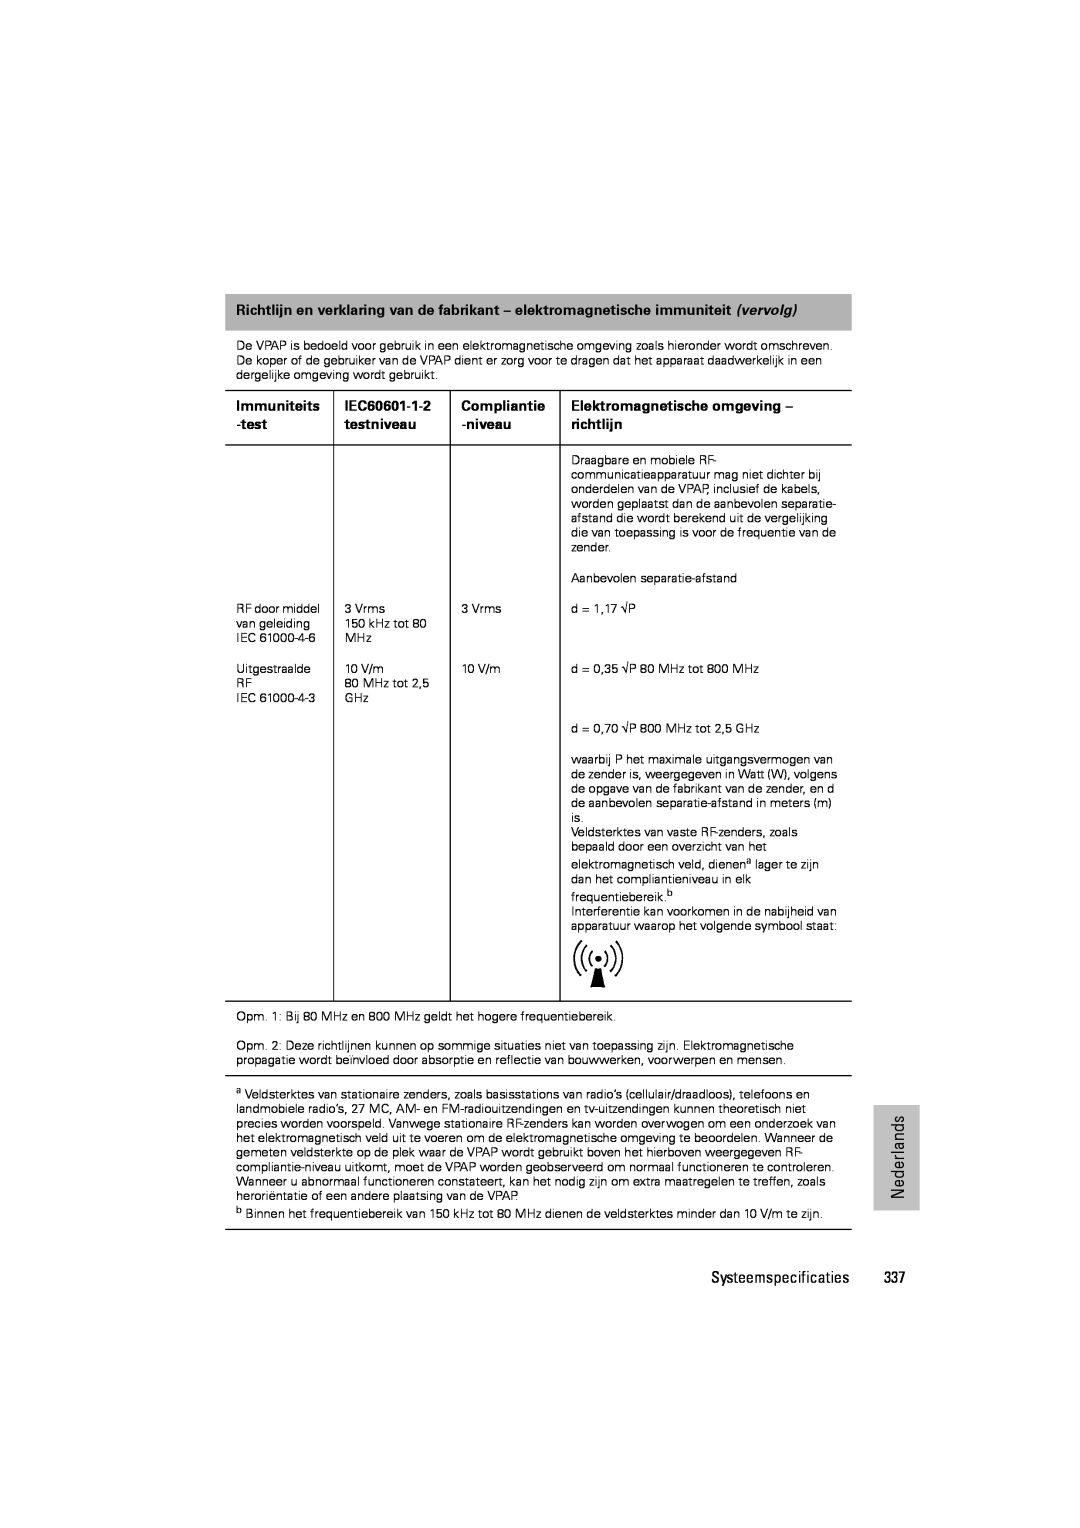 ResMed III & III ST Immuniteits, IEC60601-1-2, Compliantie, Elektromagnetische omgeving, testniveau, richtlijn 